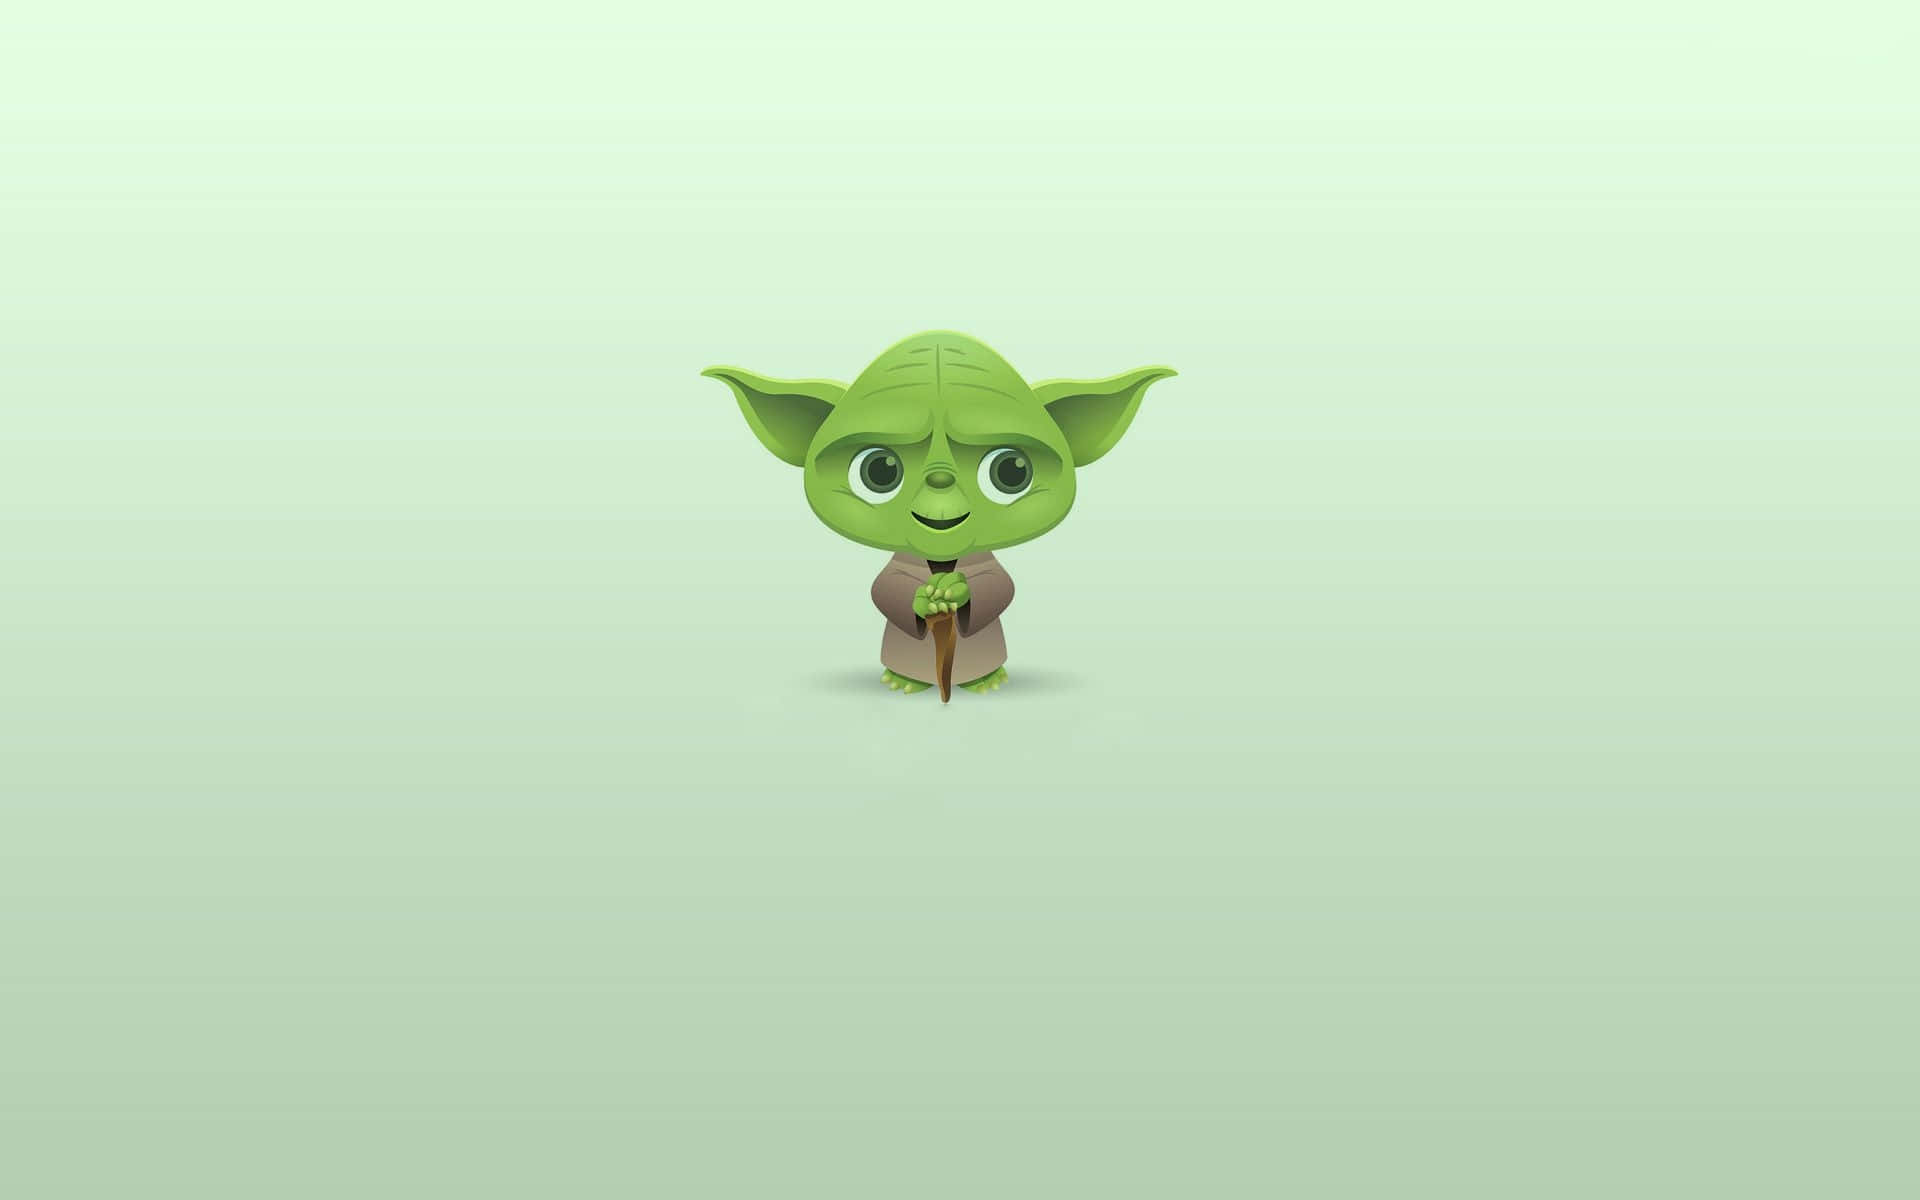 Cute Funny Star Wars Yoda Background